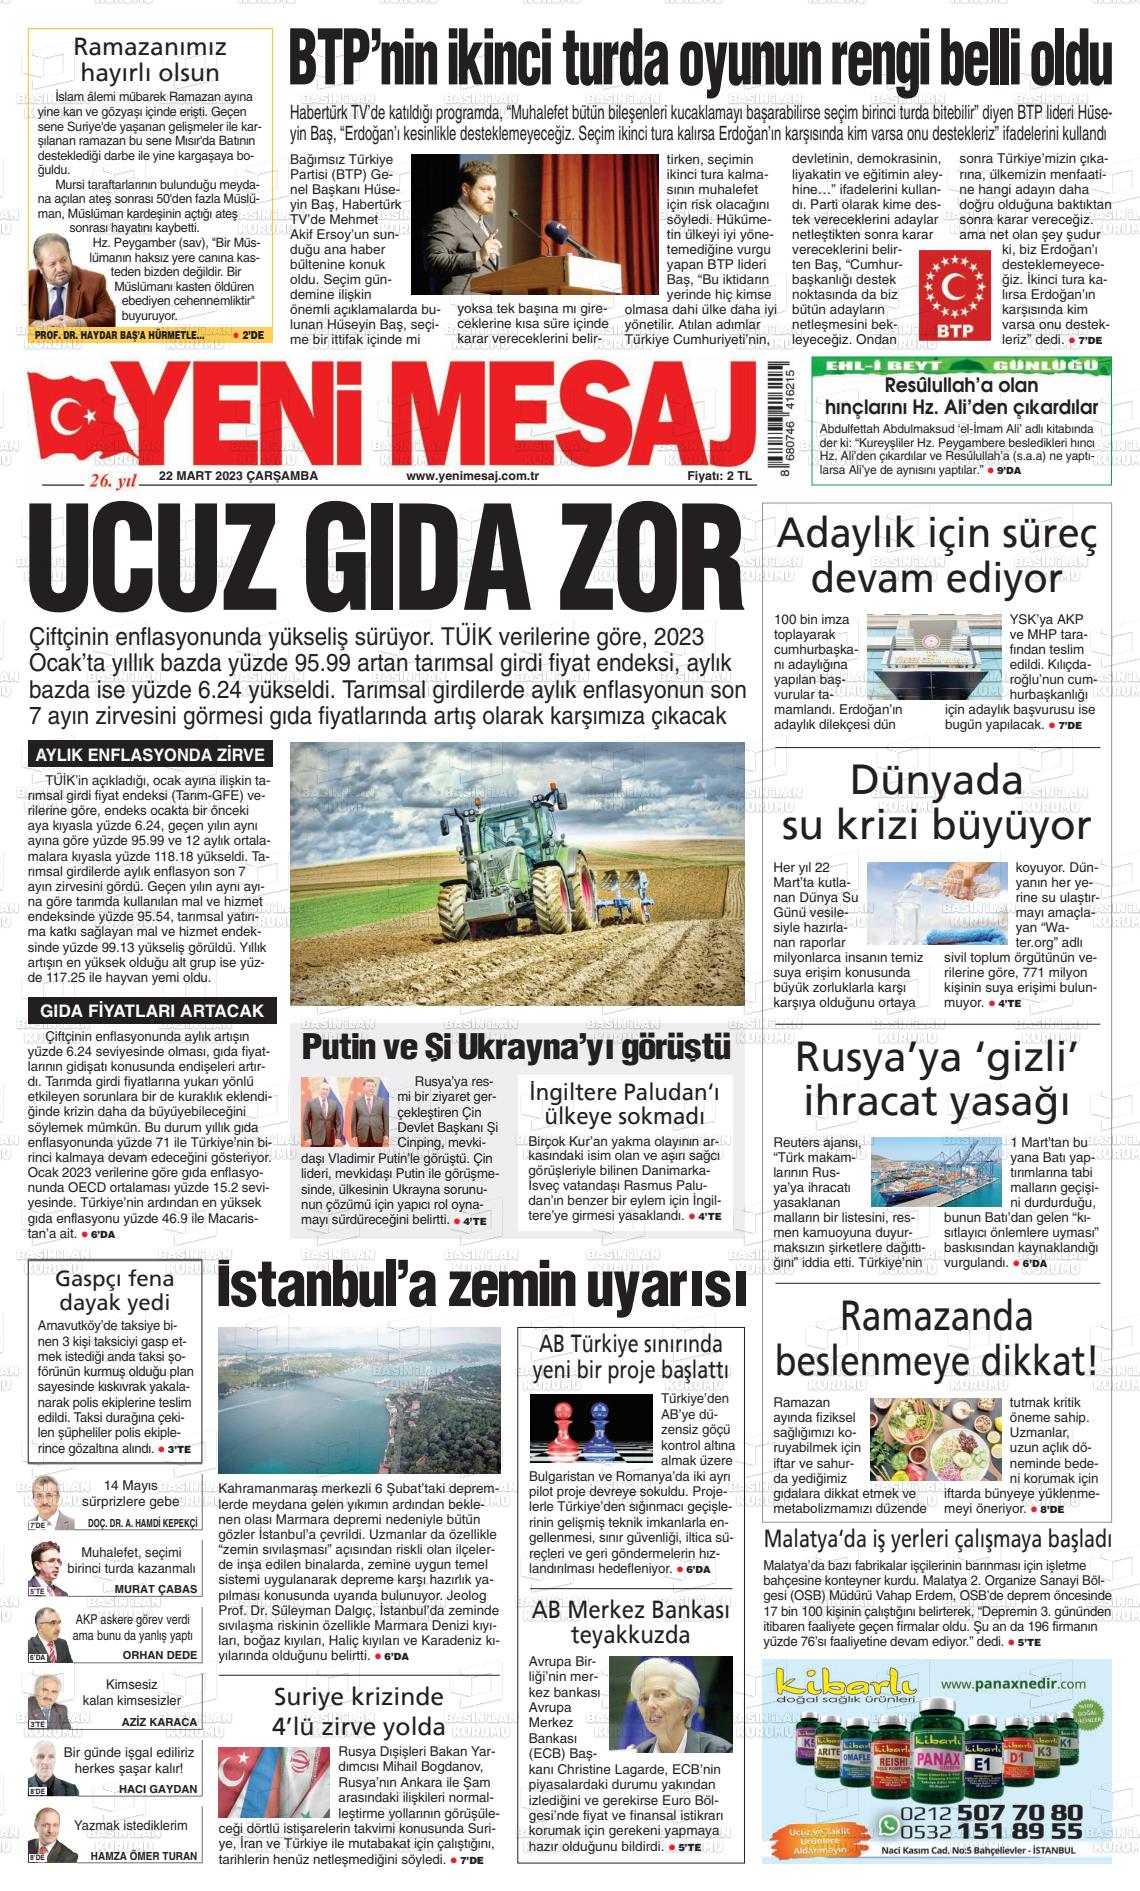 22 Mart 2023 Yeni Mesaj Gazete Manşeti